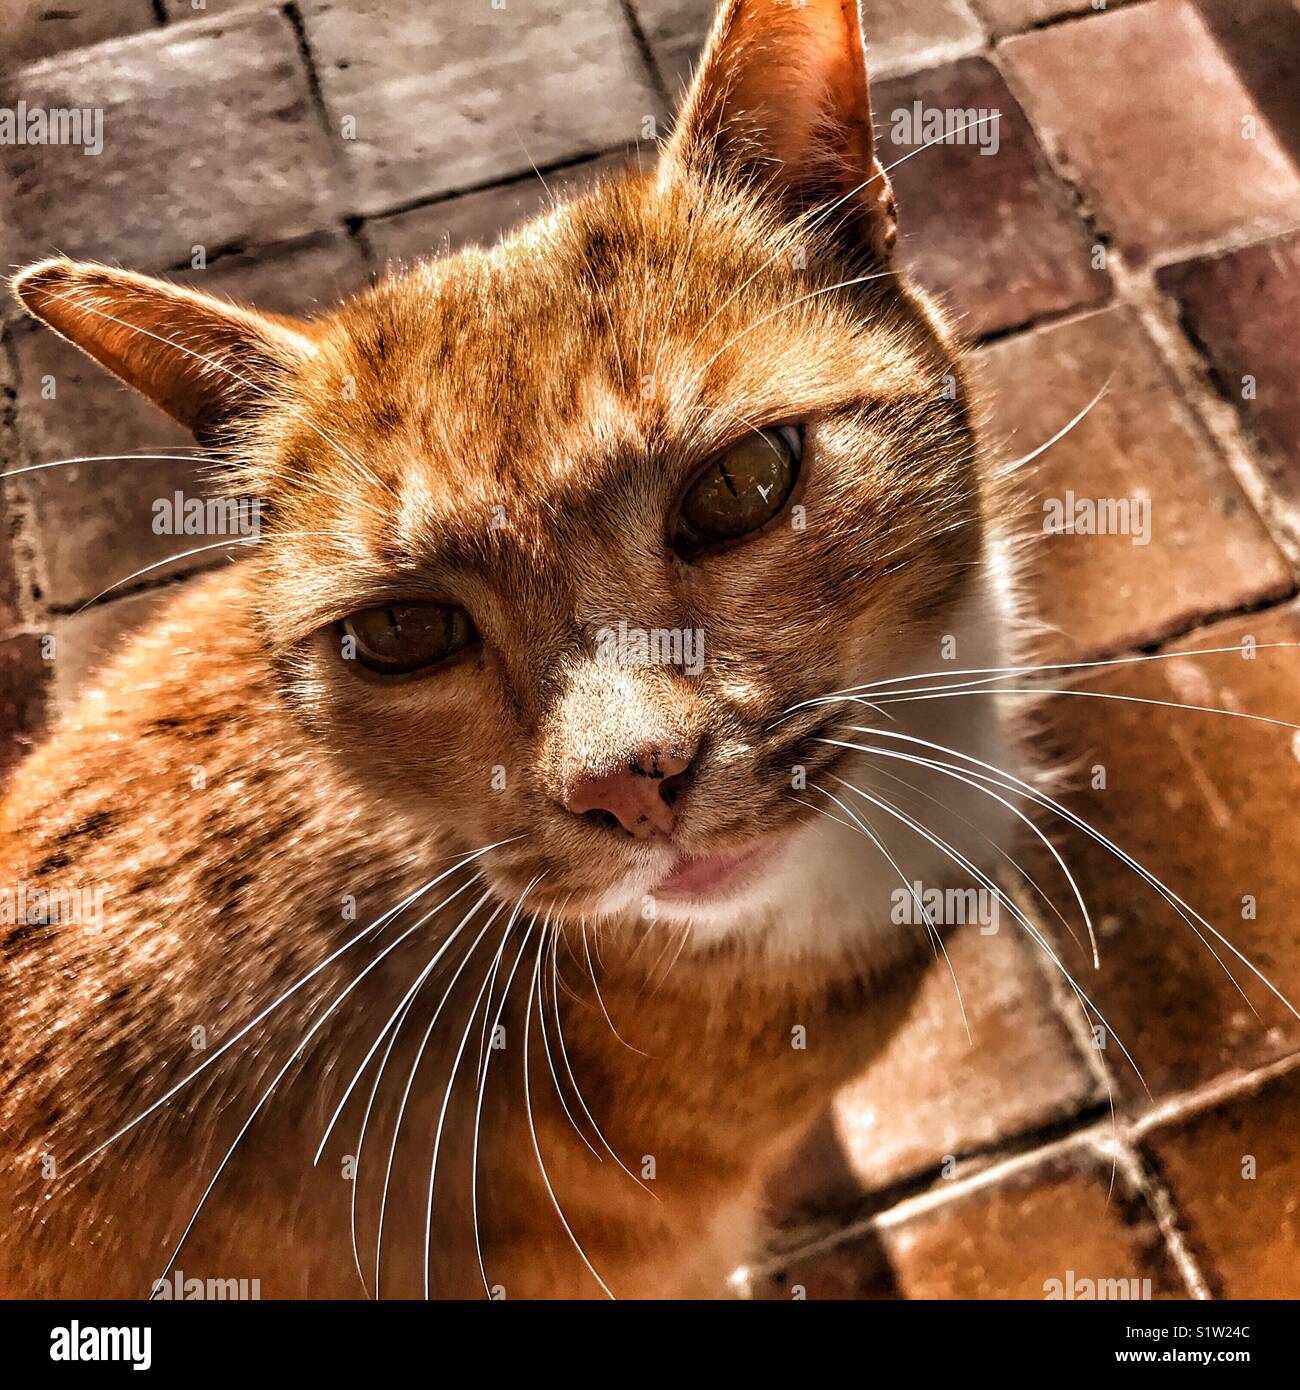 Ginger tom cat portrait Stock Photo